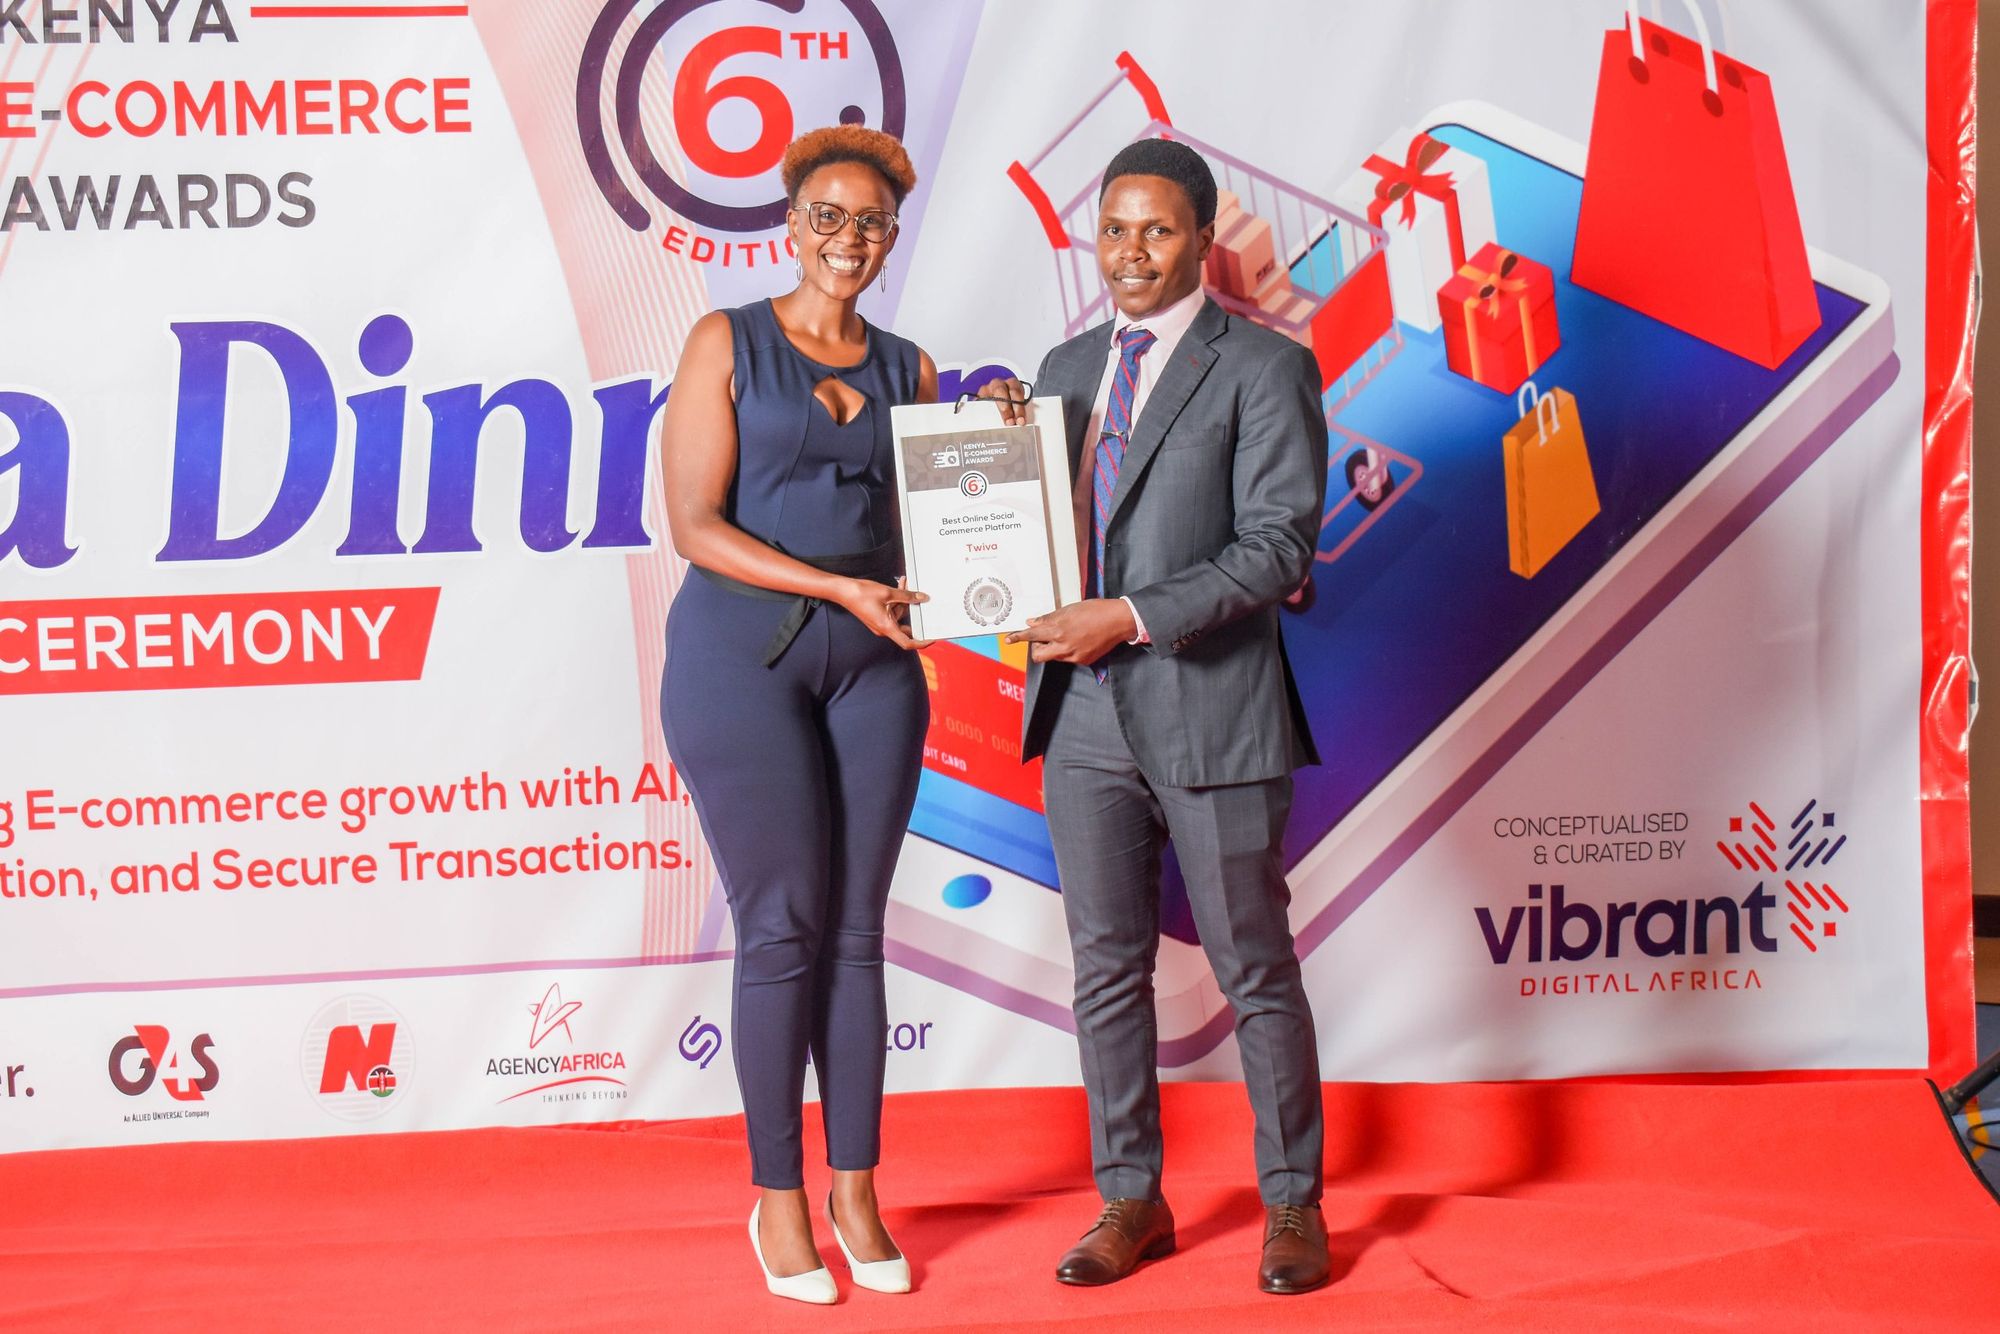 Twiva Celebrates Milestone Wins at Kenya E-commerce Awards